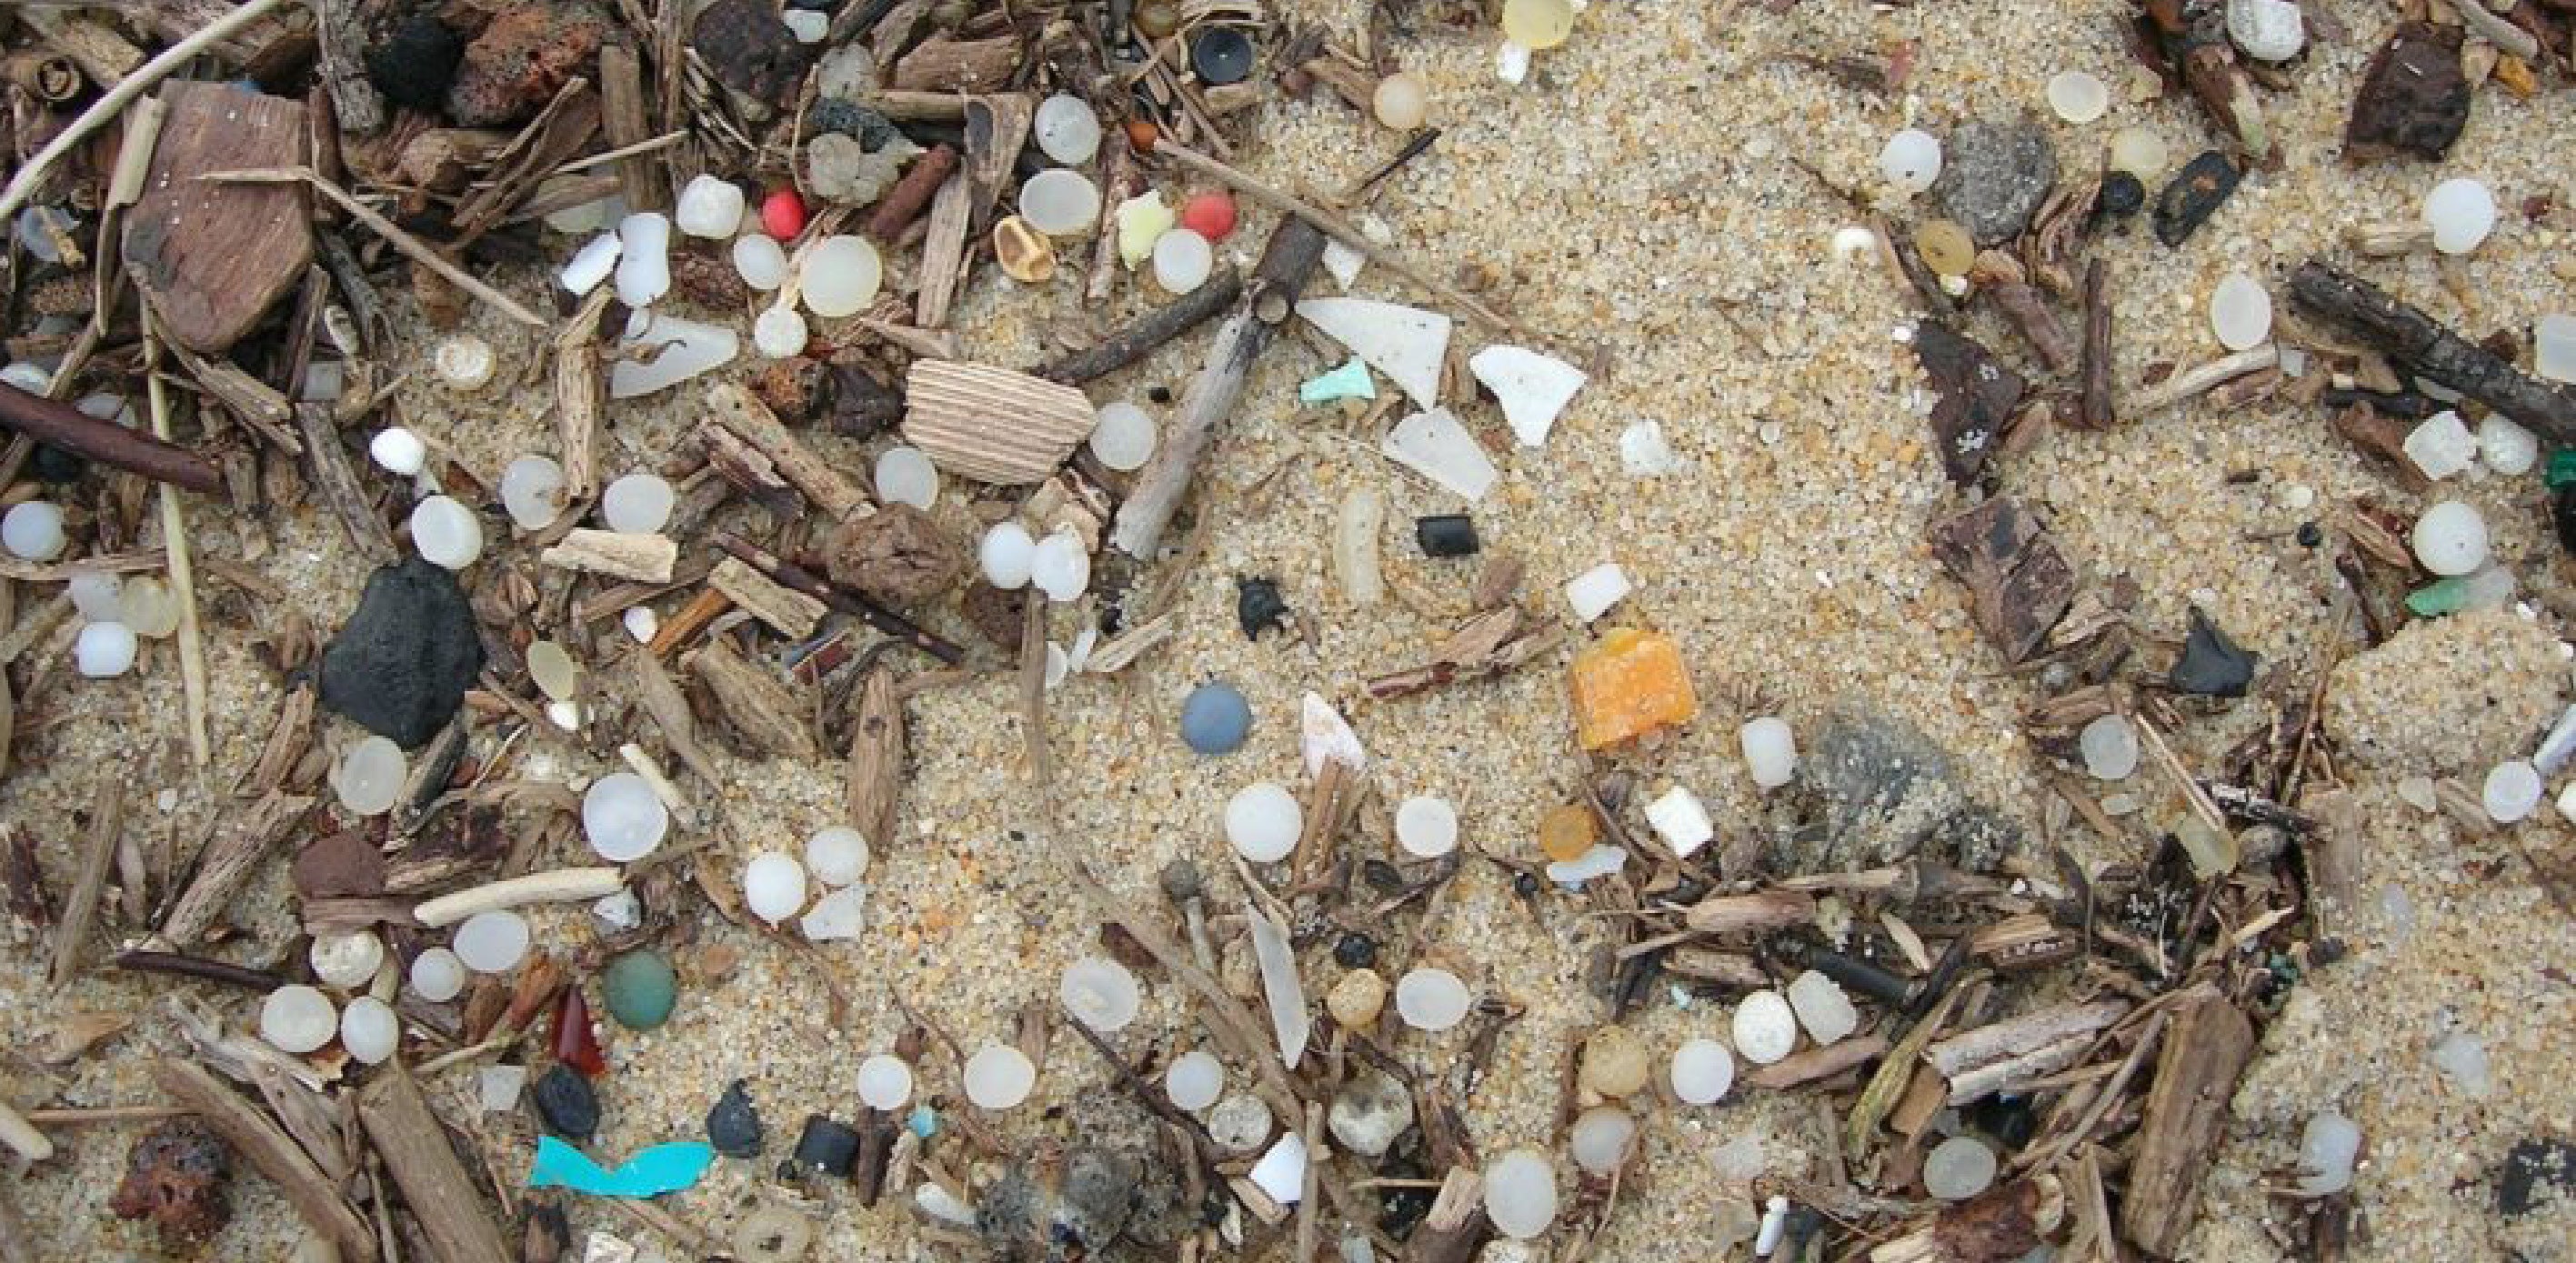 Nurdles - Plastic oceans and beaches